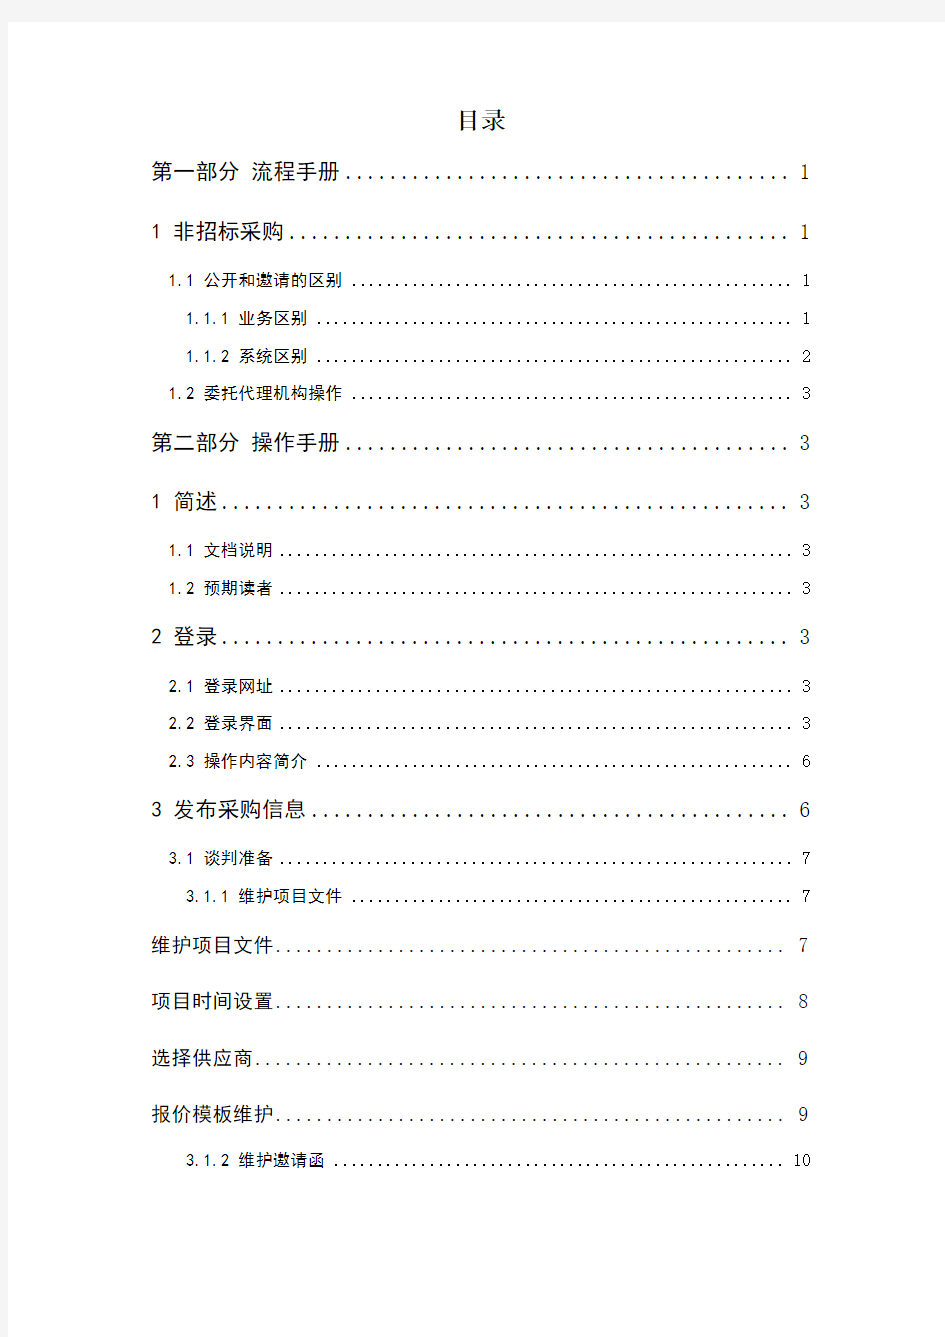 中国移动电子采购与招标投标系统V 版本操作手册 其他采购 代理机构项目经理分册 v 